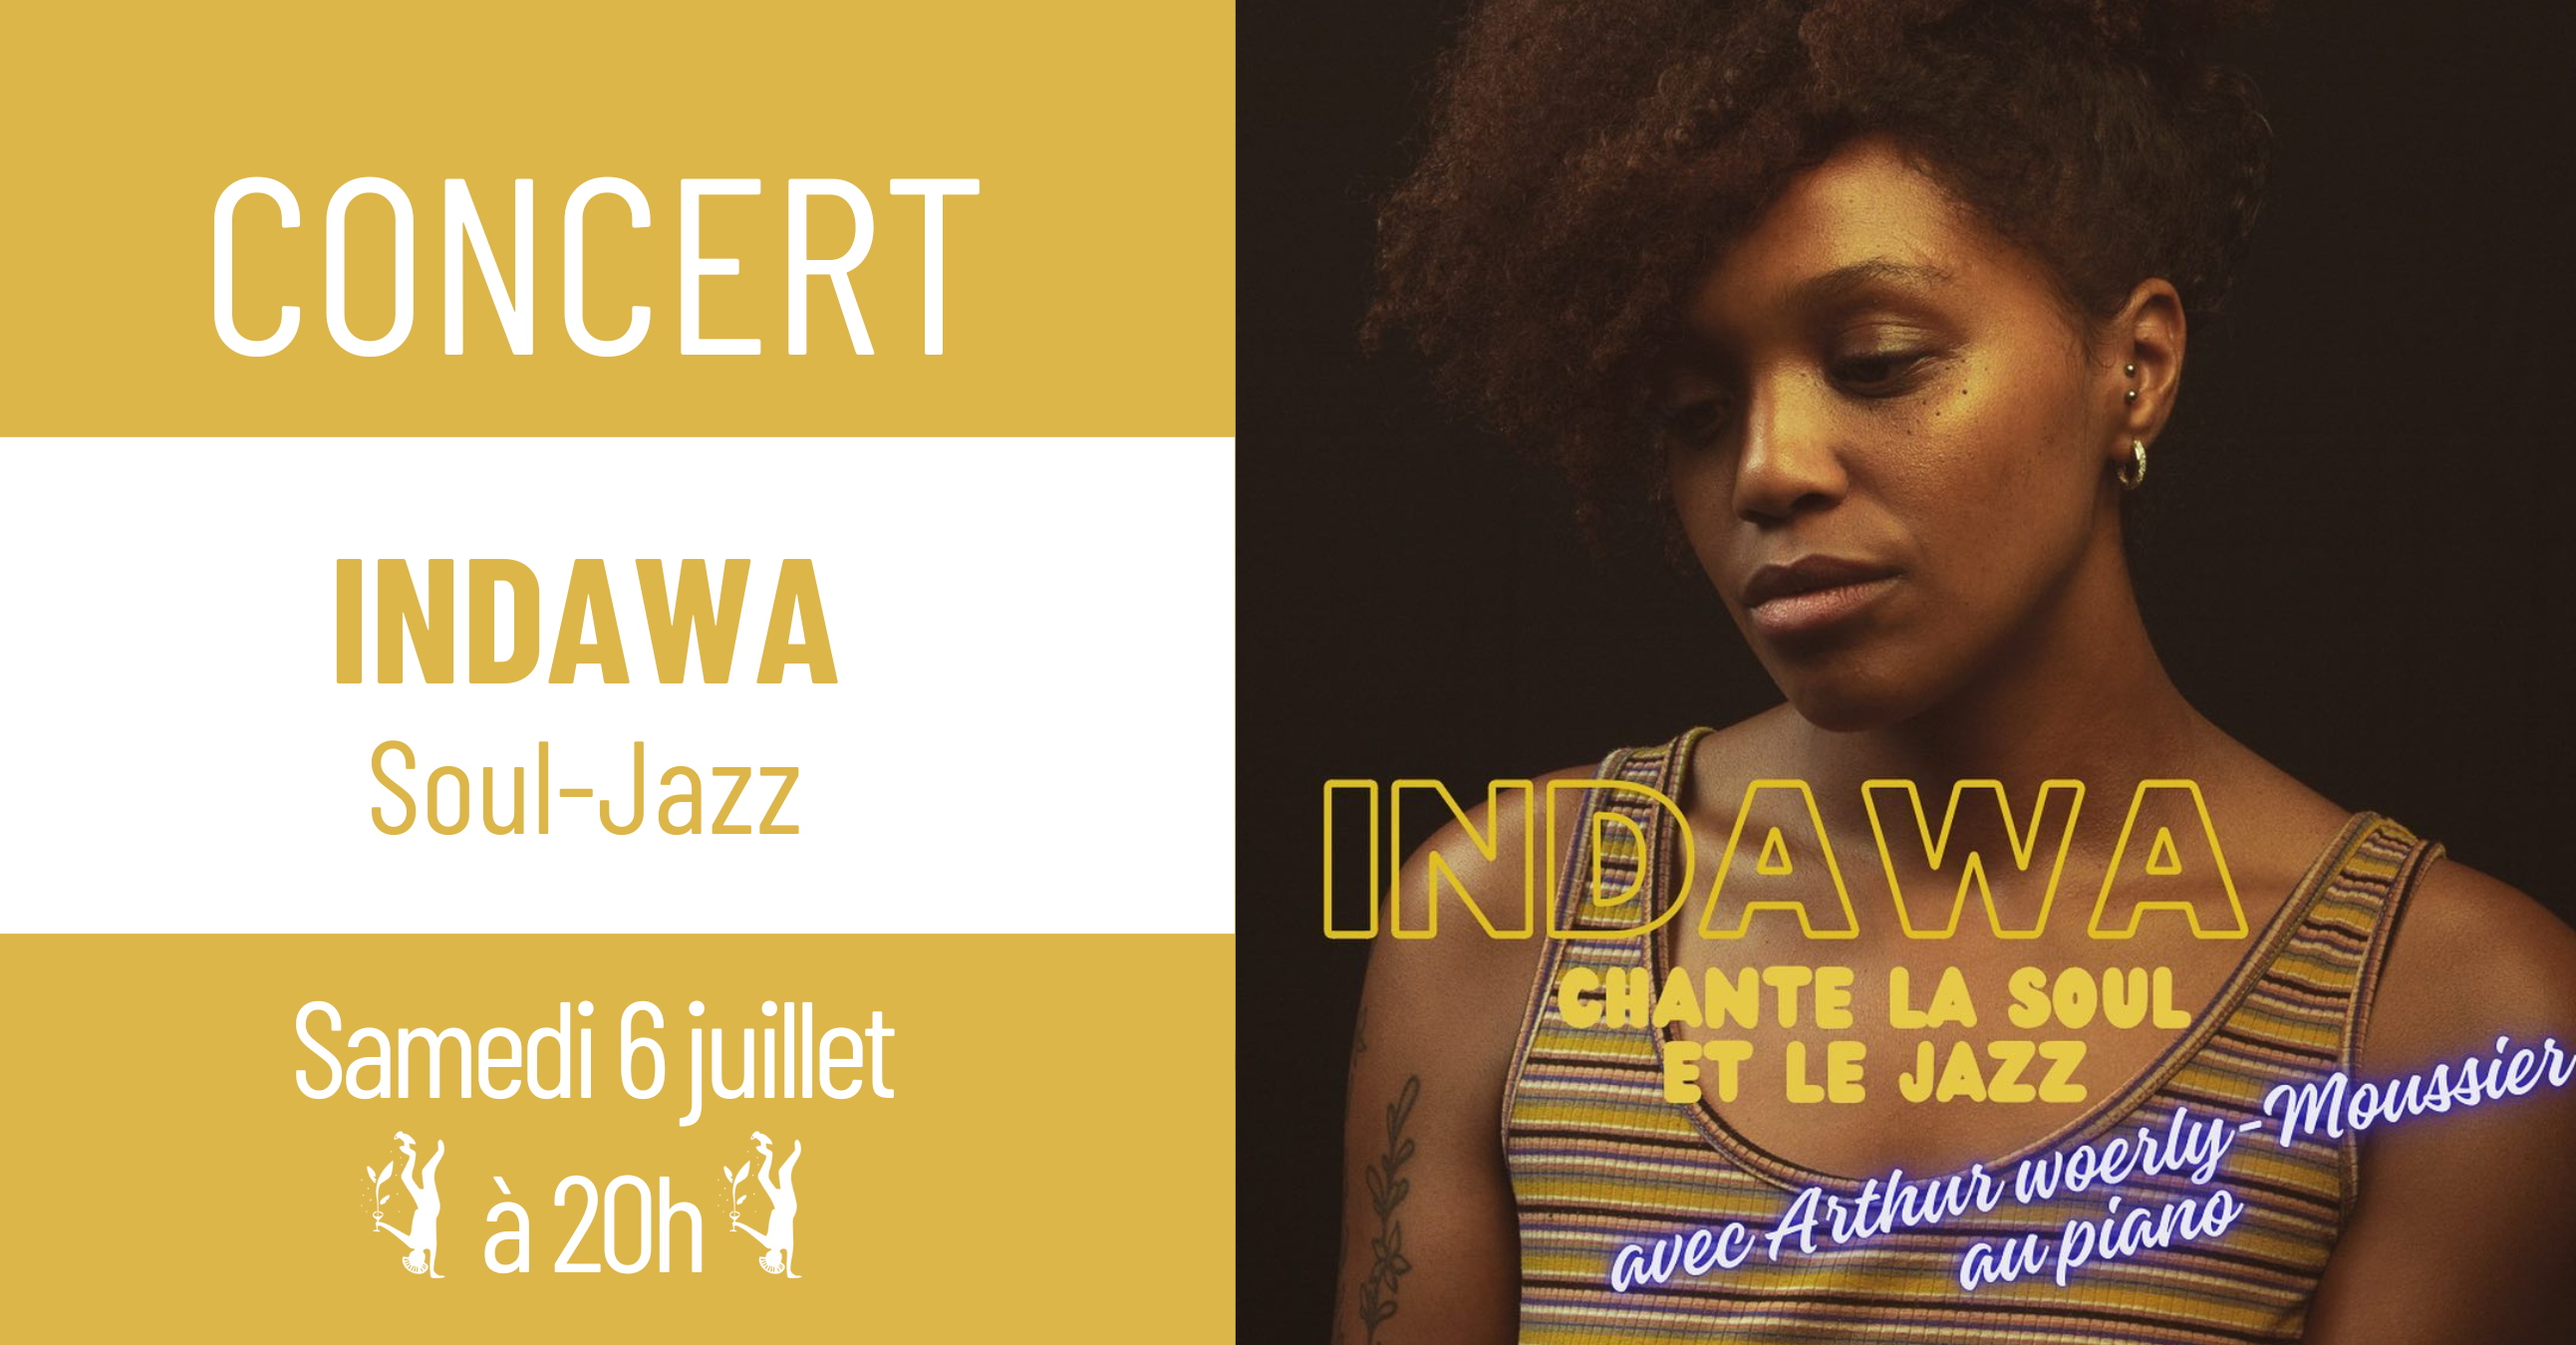 INDAWA chante le jazz et la soul 6 juillet